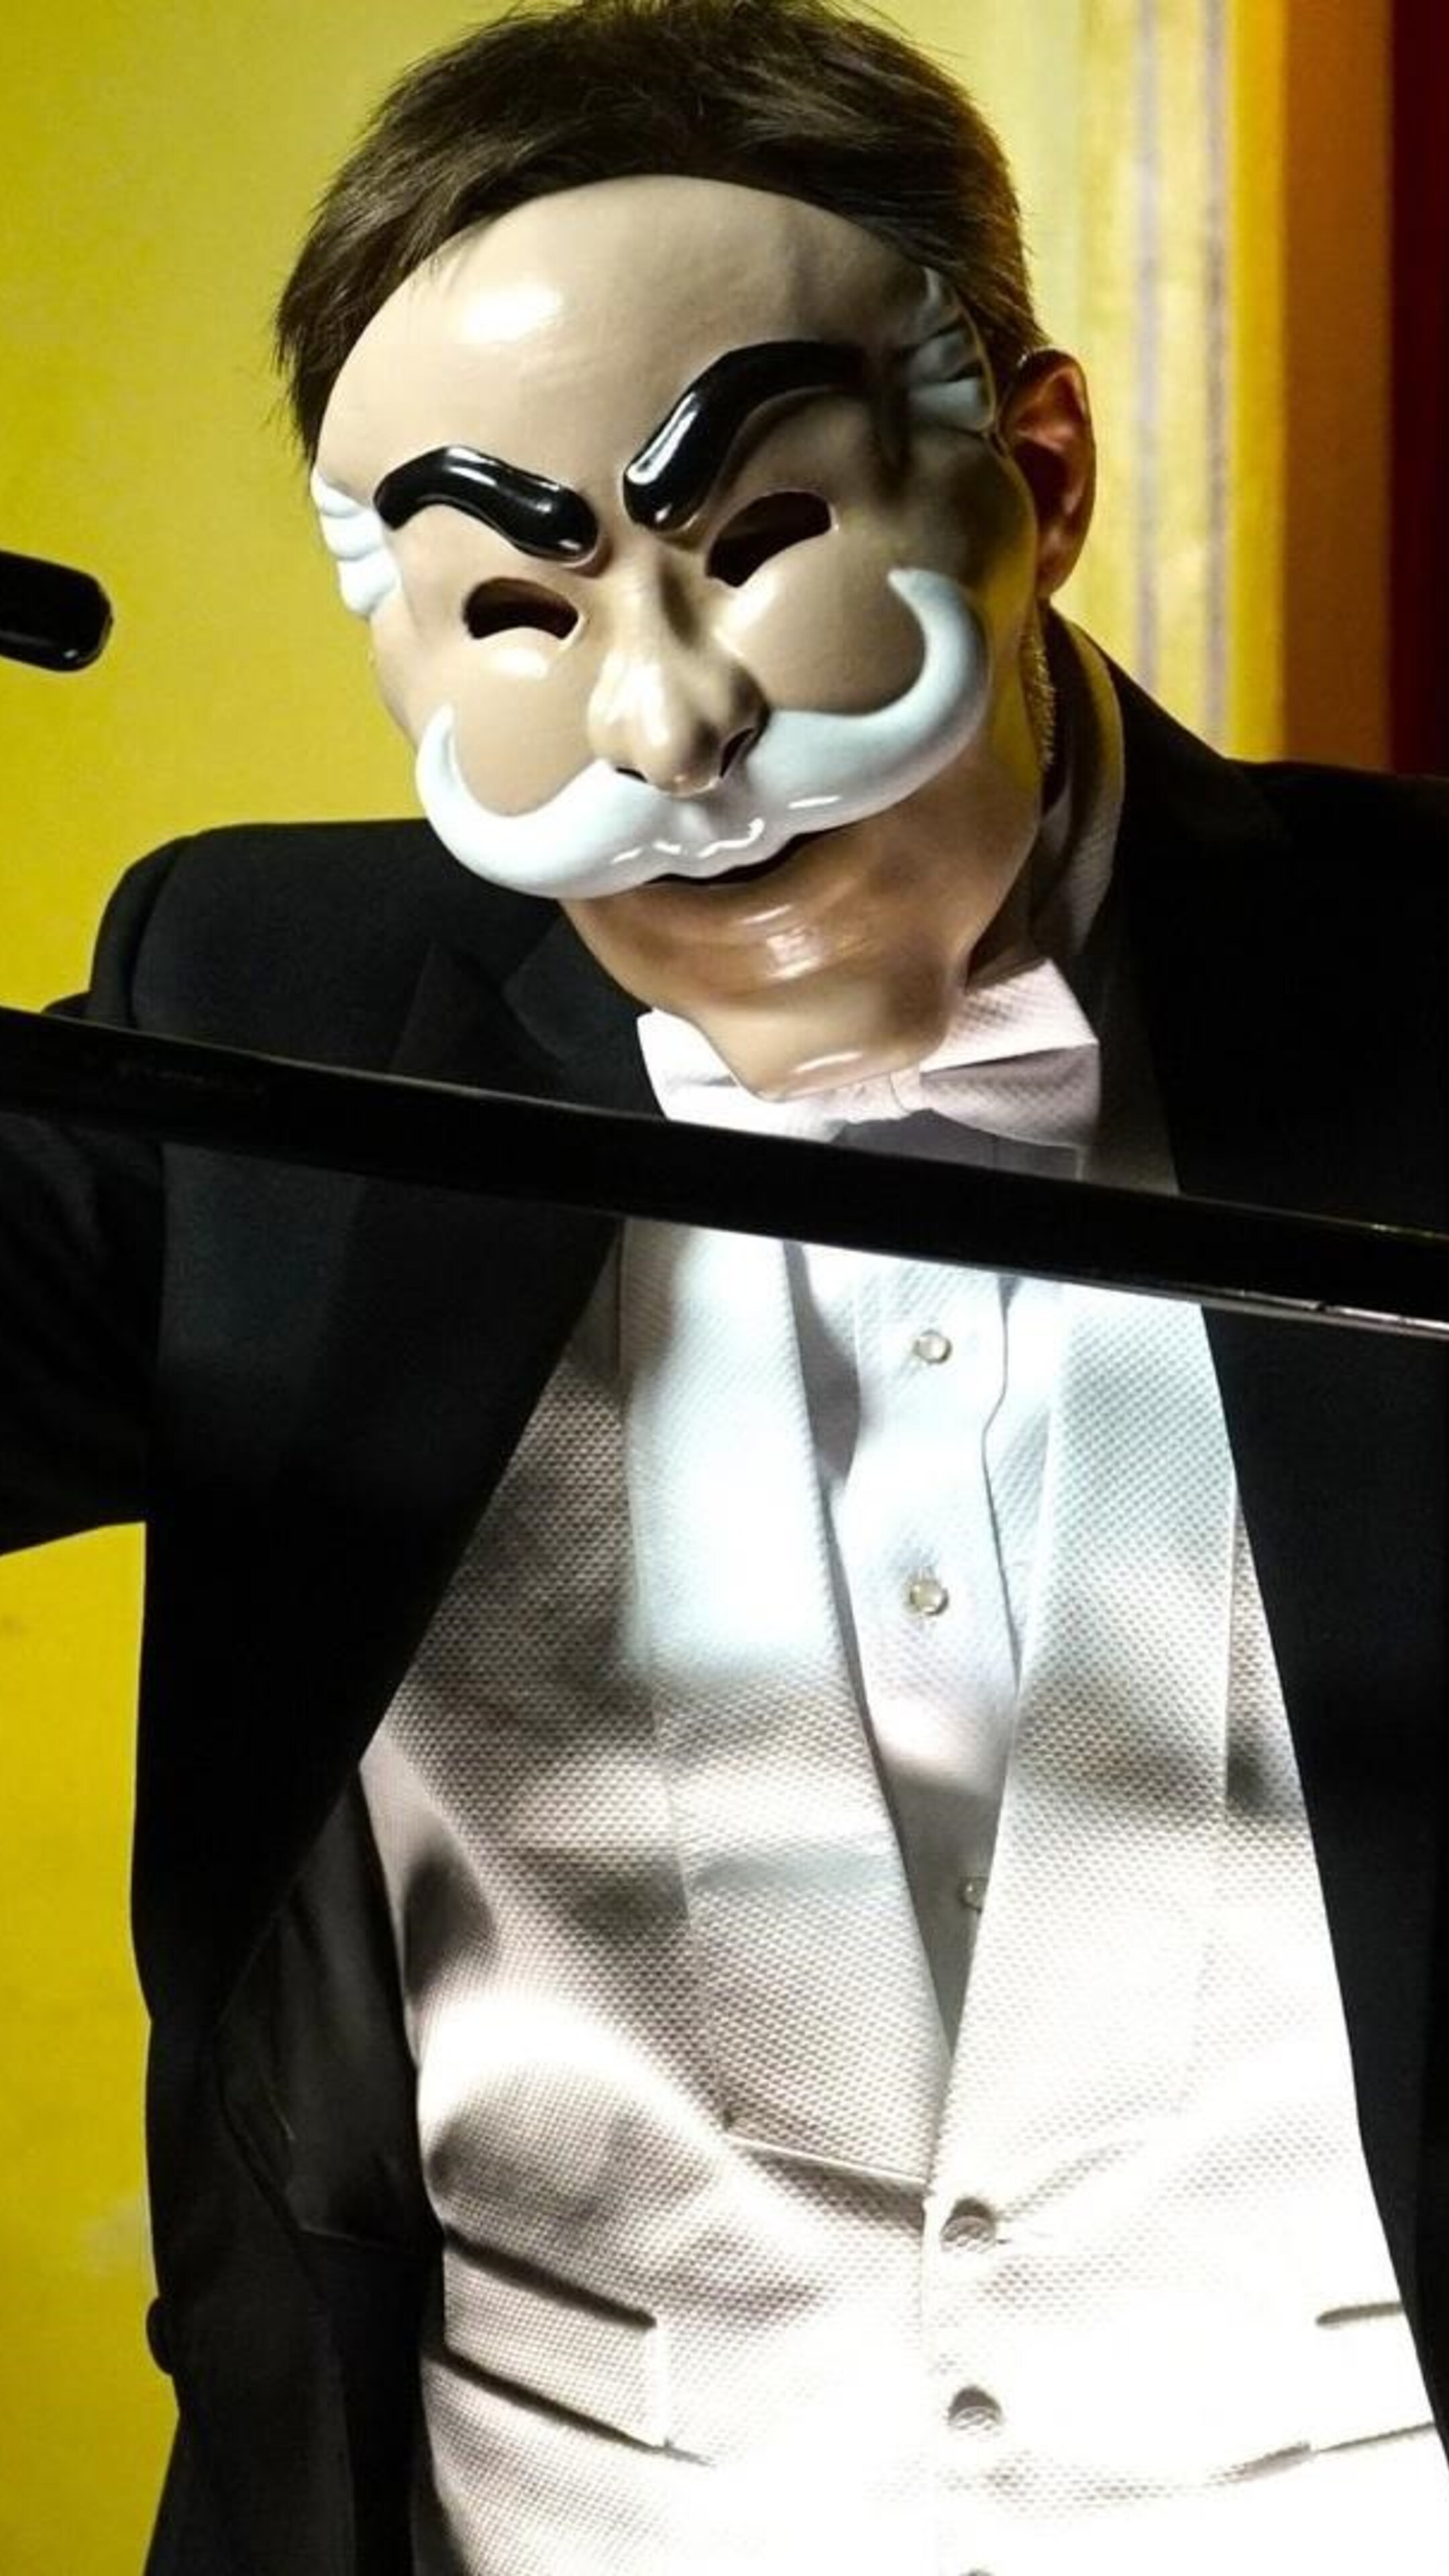 Где будут снимать маску. Mr Robot маска. Шоу маска 2 часть. Милохин в шоу маска.